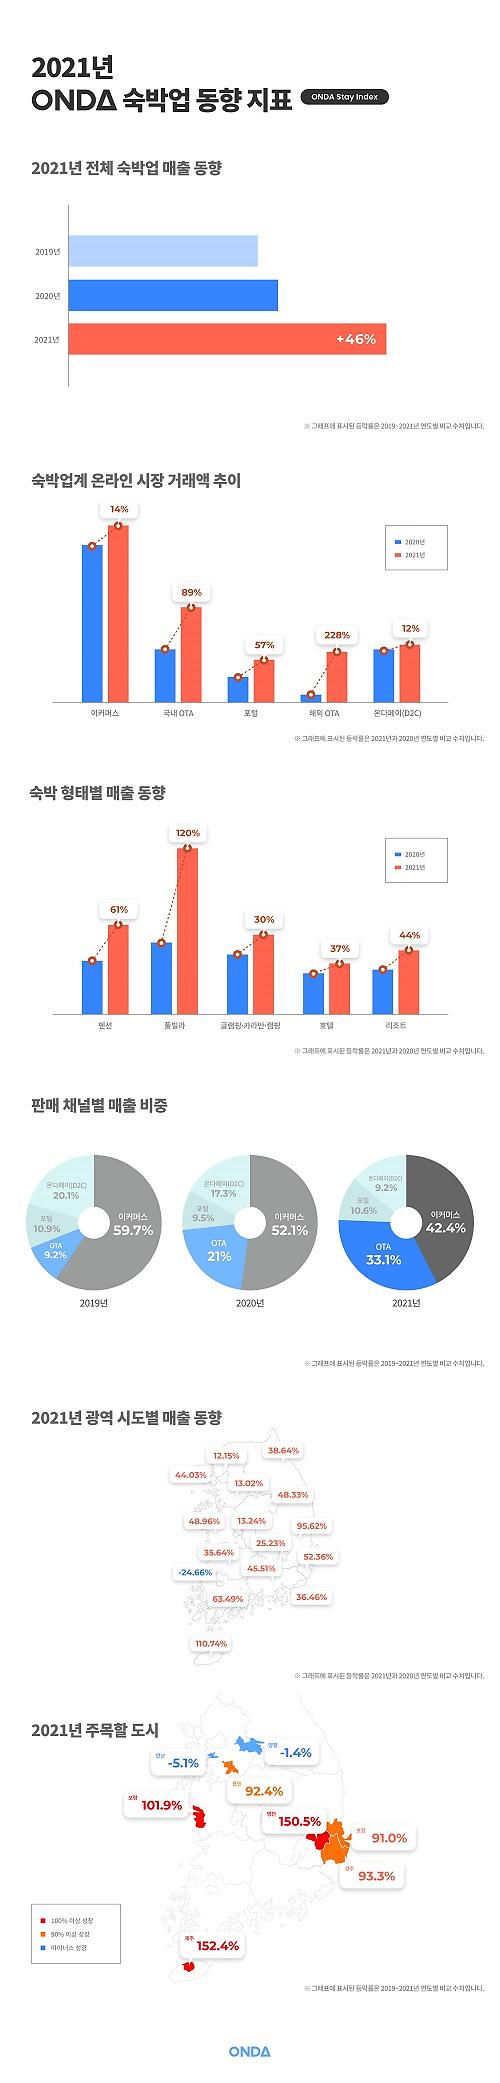 방탄소년단 유니버스, 빌보드 역주행…LA 콘서트 효과 톡톡